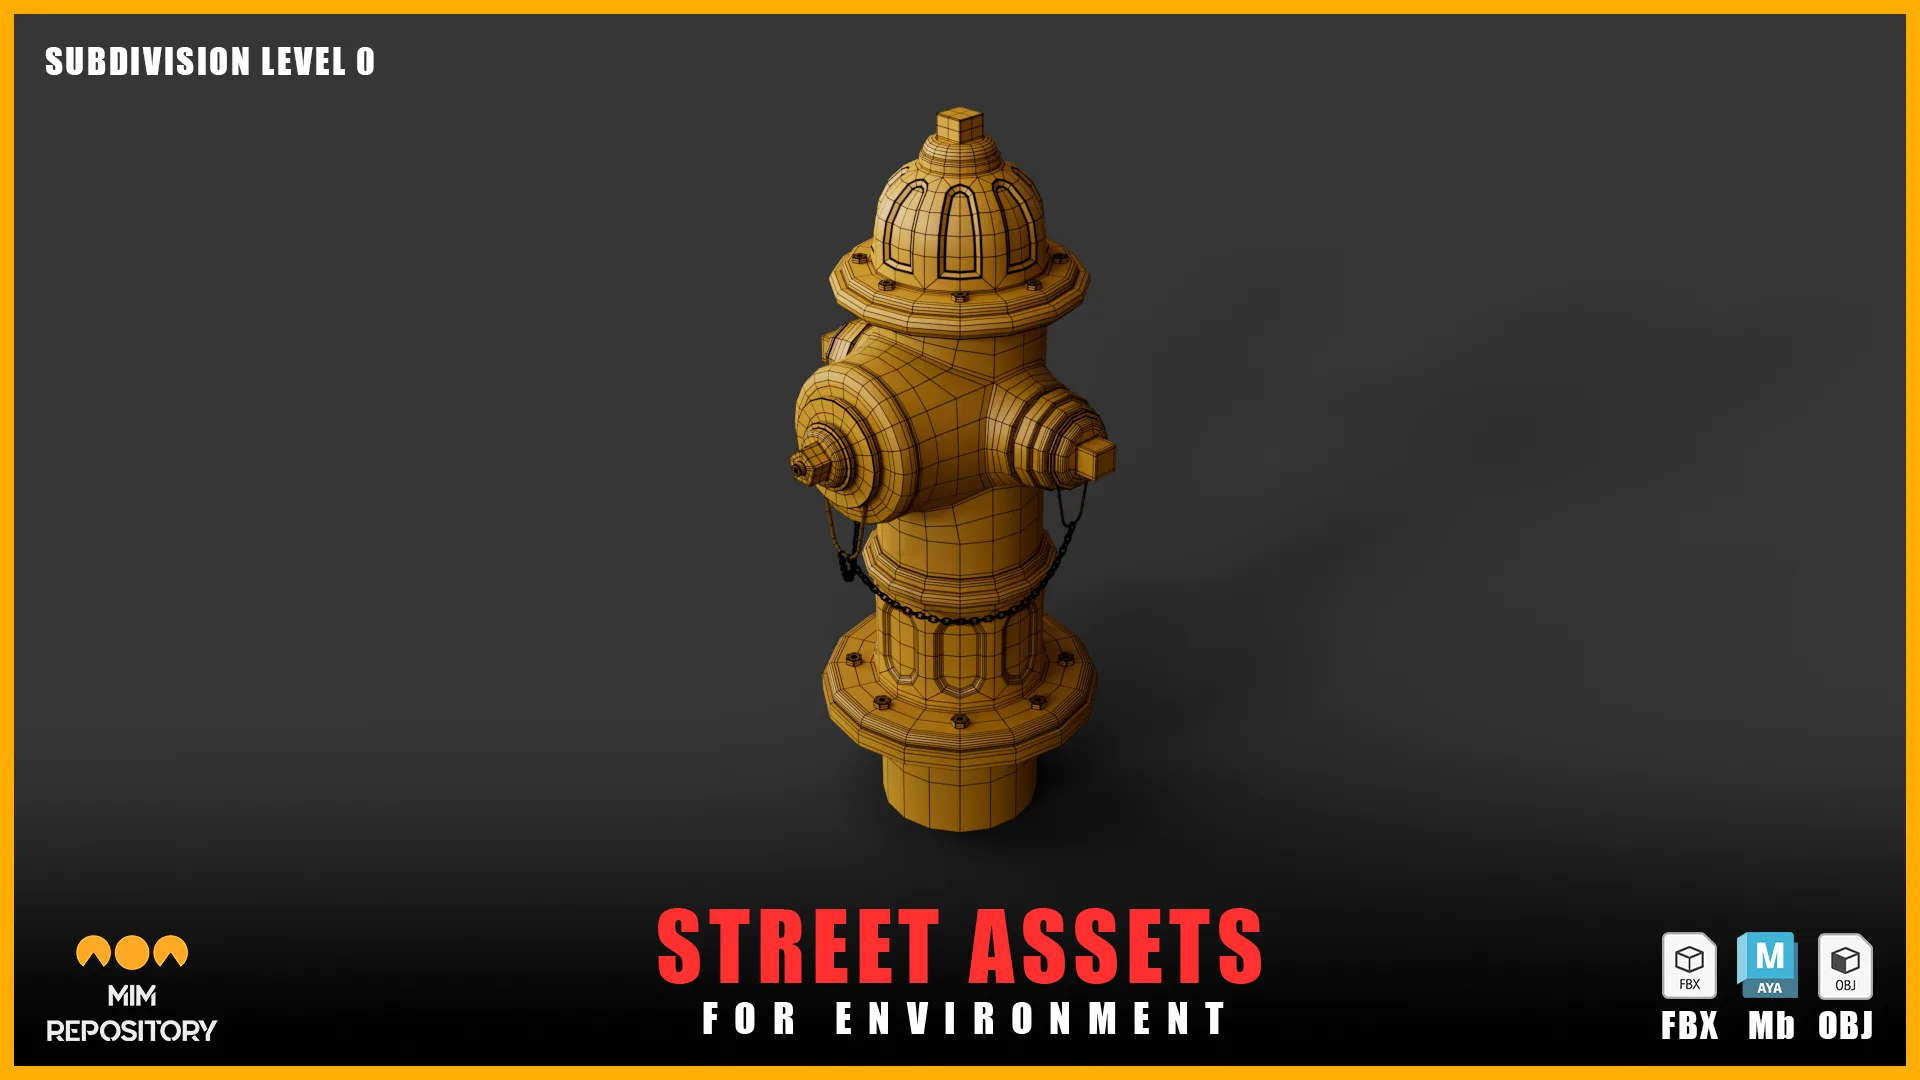 10 Street Assets